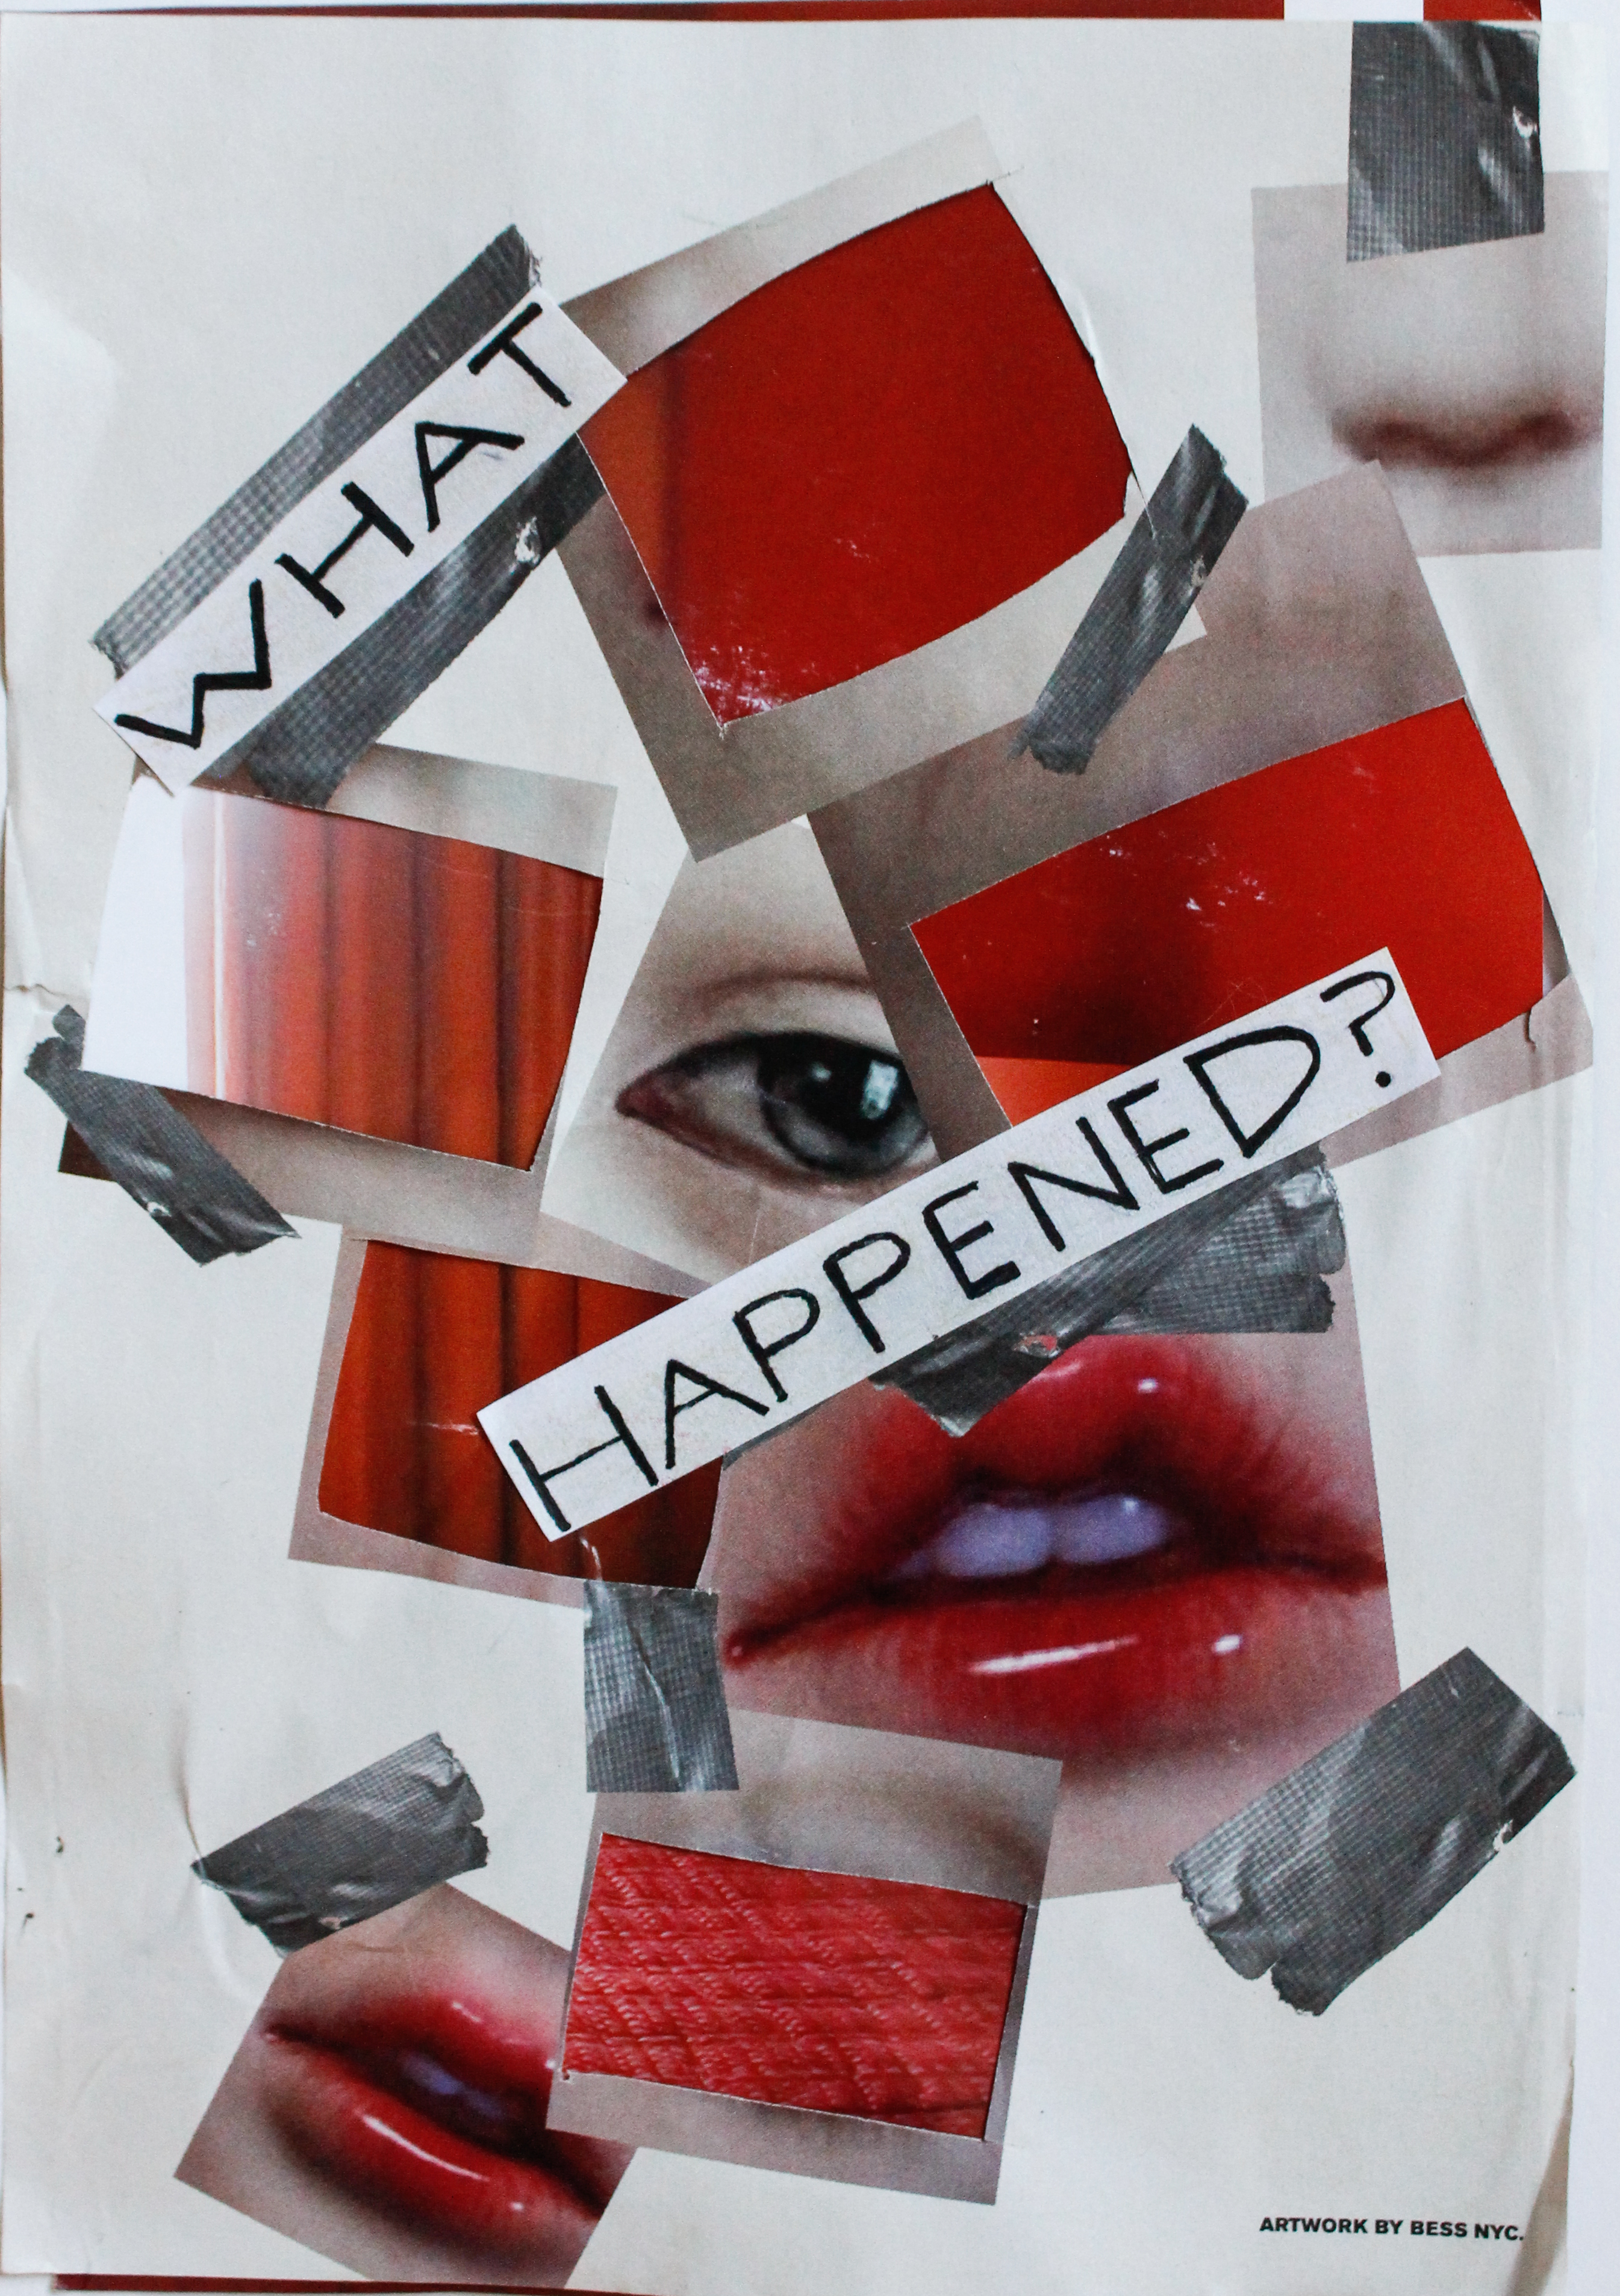 "What happened?" By Helena Rose Bassett